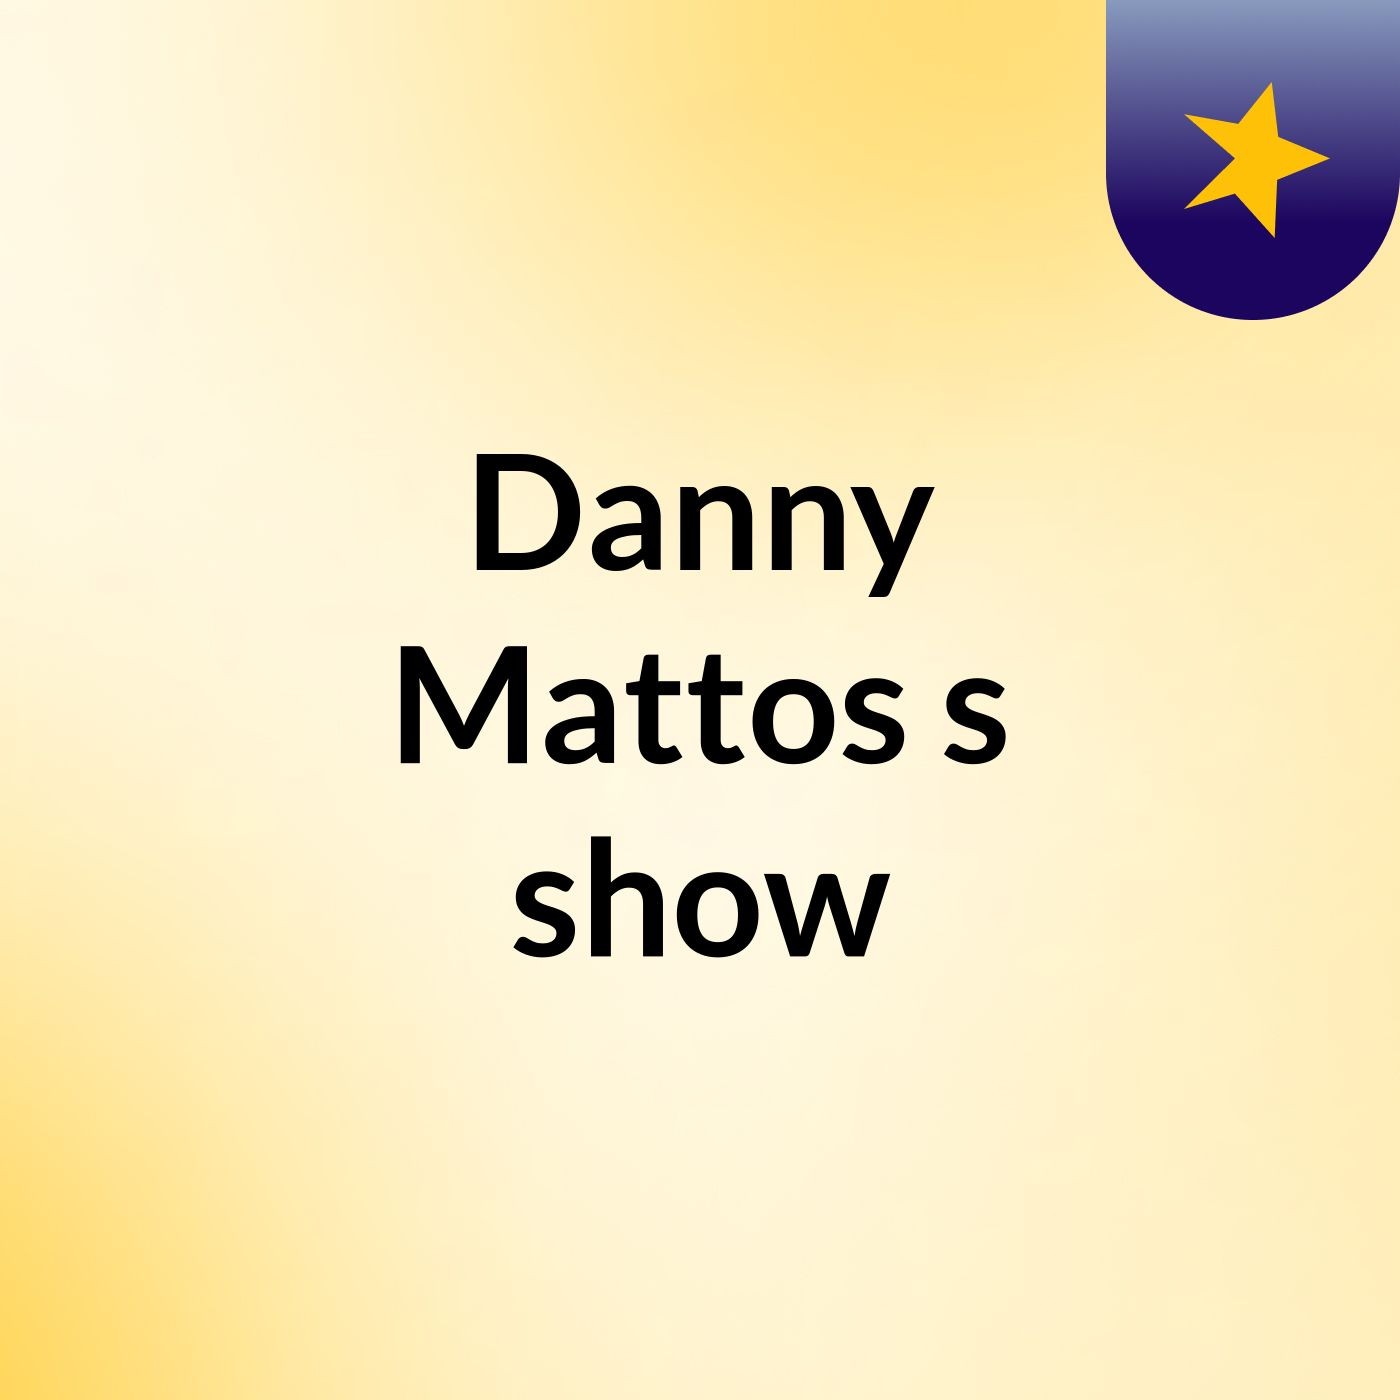 Danny Mattos's show